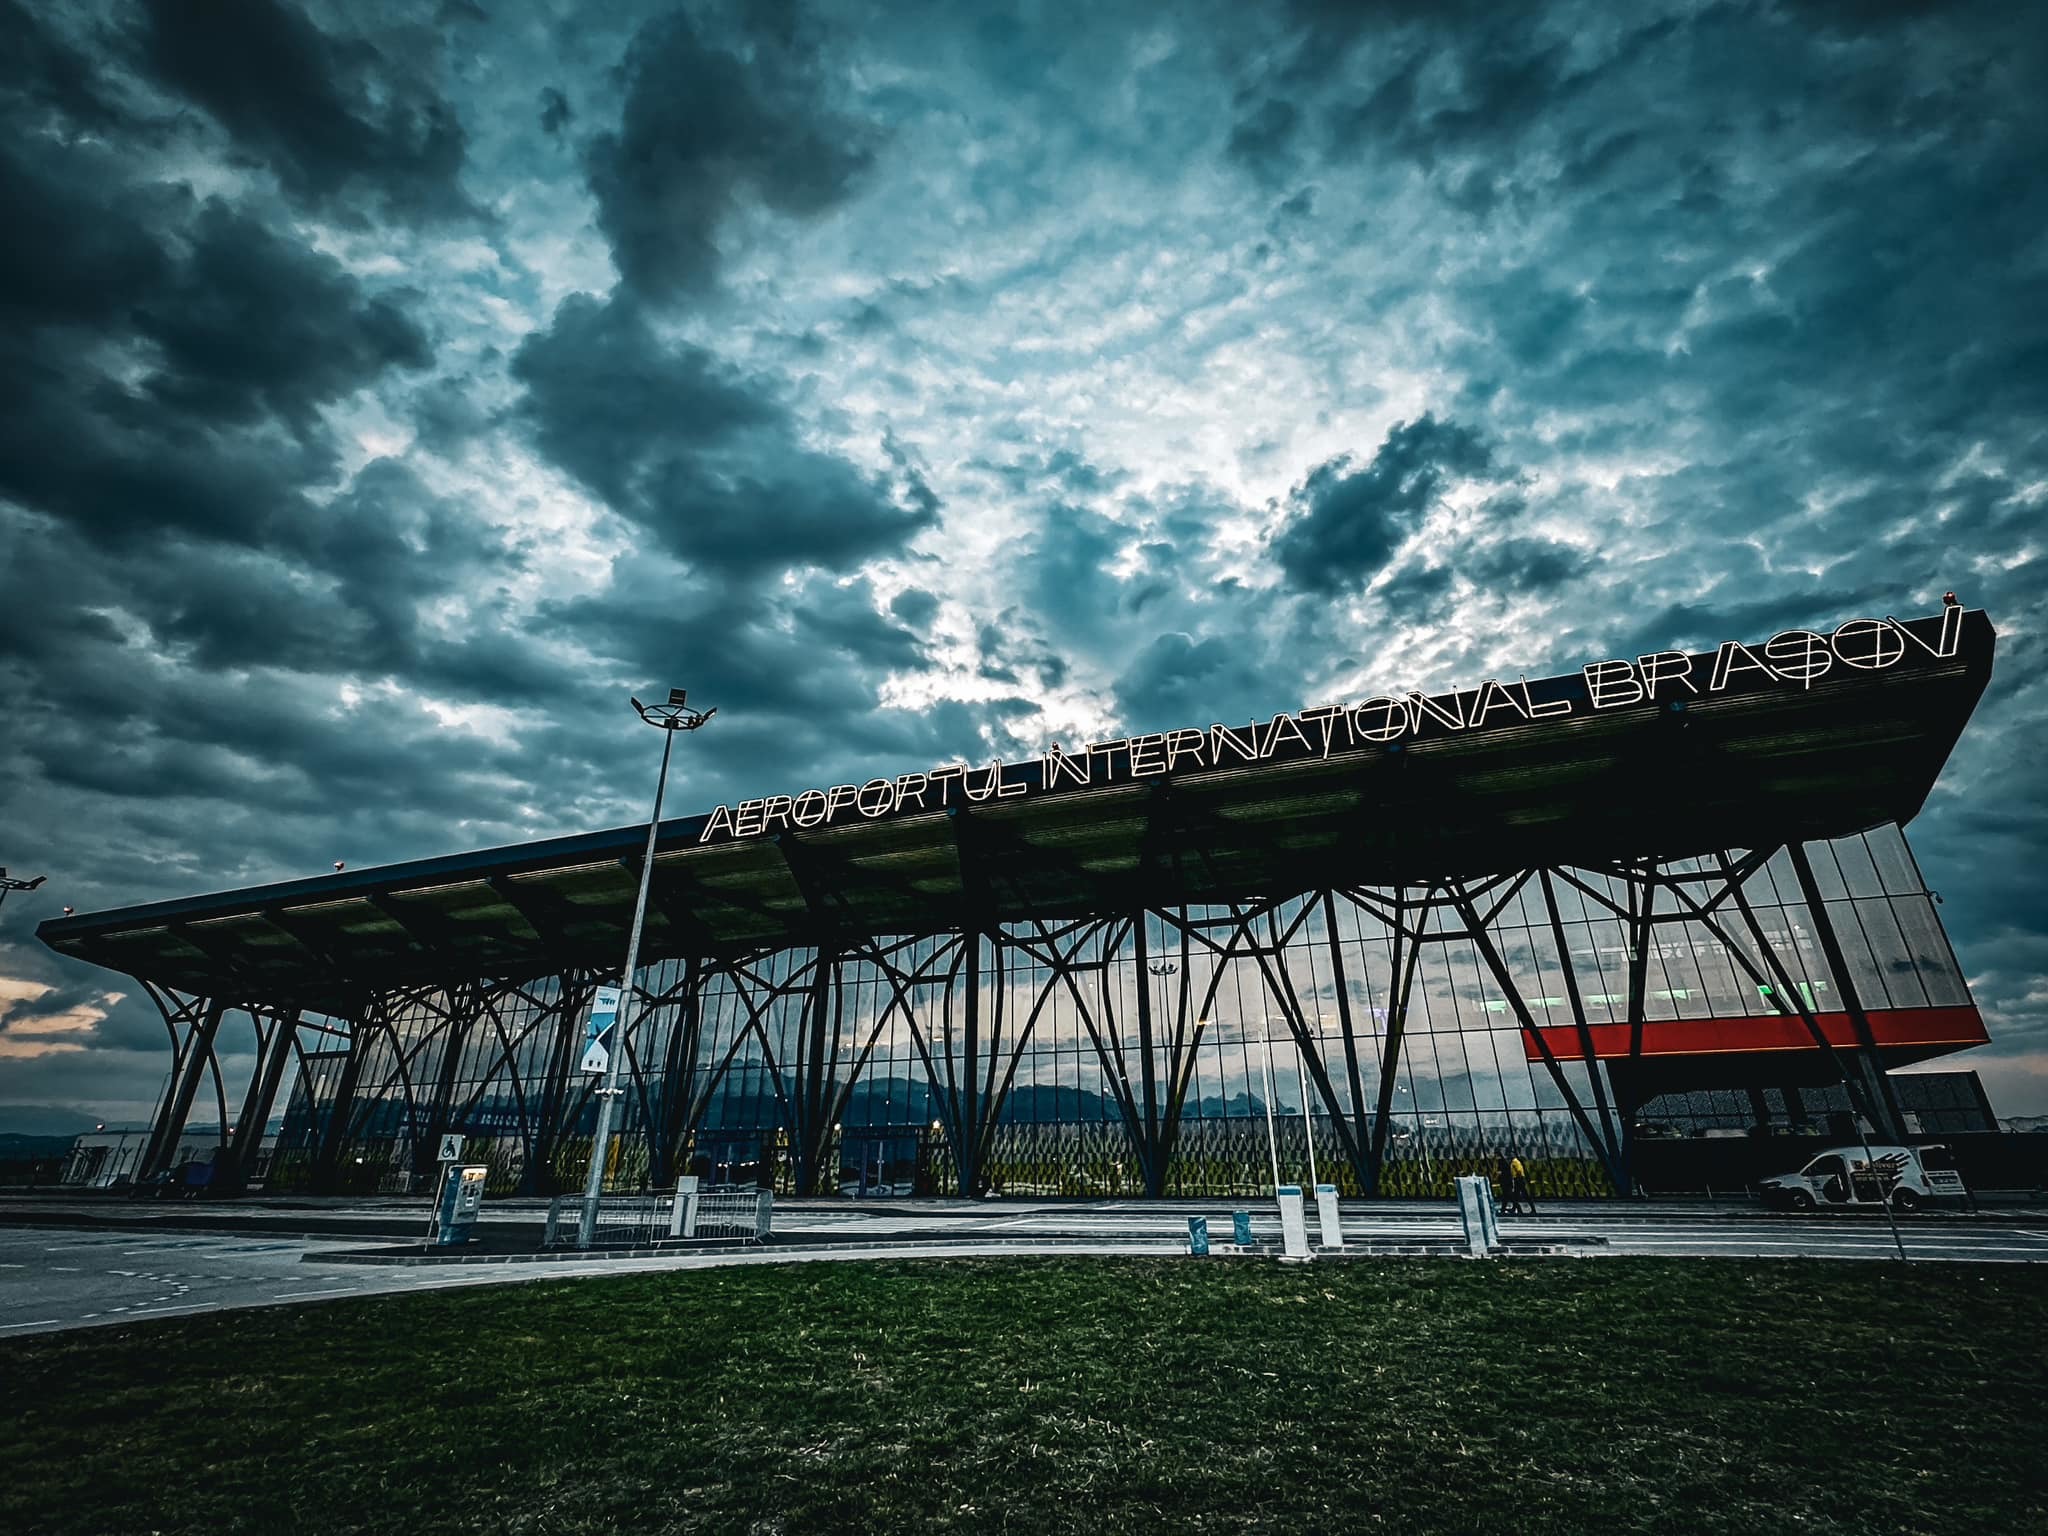 Prima cursă pe Aeroportul Braşov-Ghimbav. Ce îl face unic în Europa de est